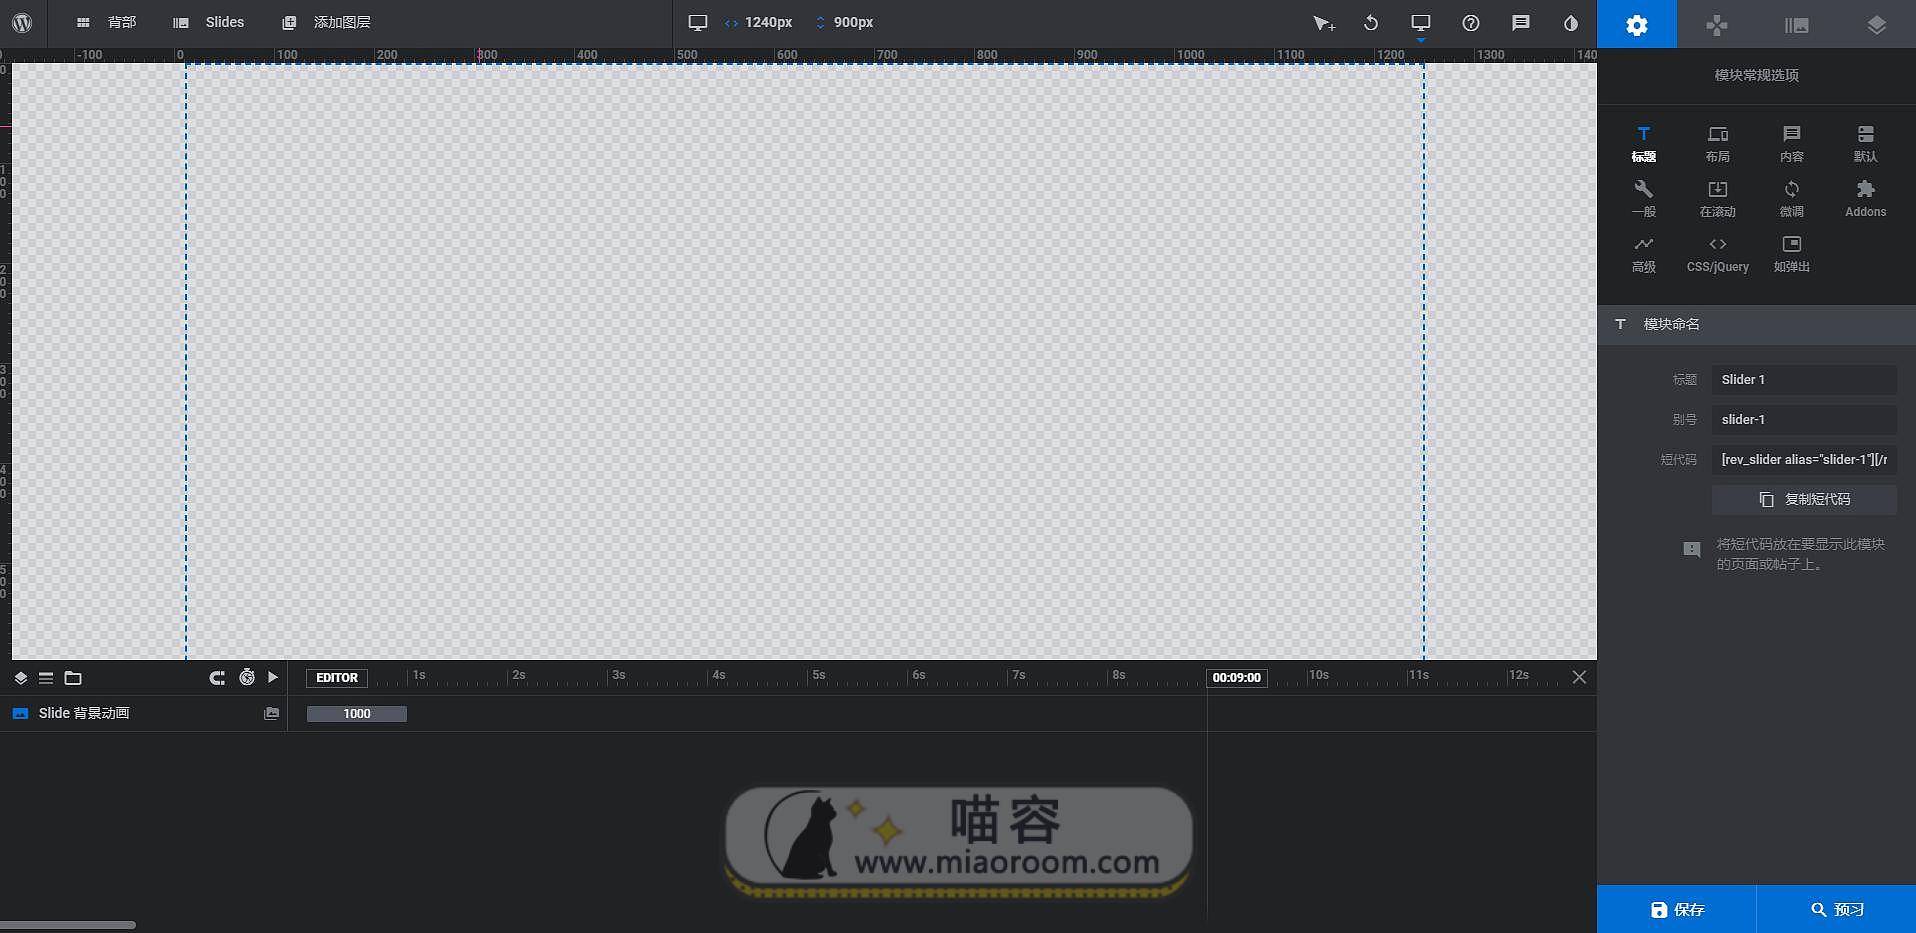 「WP插件」视差轮播图 Slider Revolution v6.0.9 已更新 高级版 破解专业版 【中文汉化】